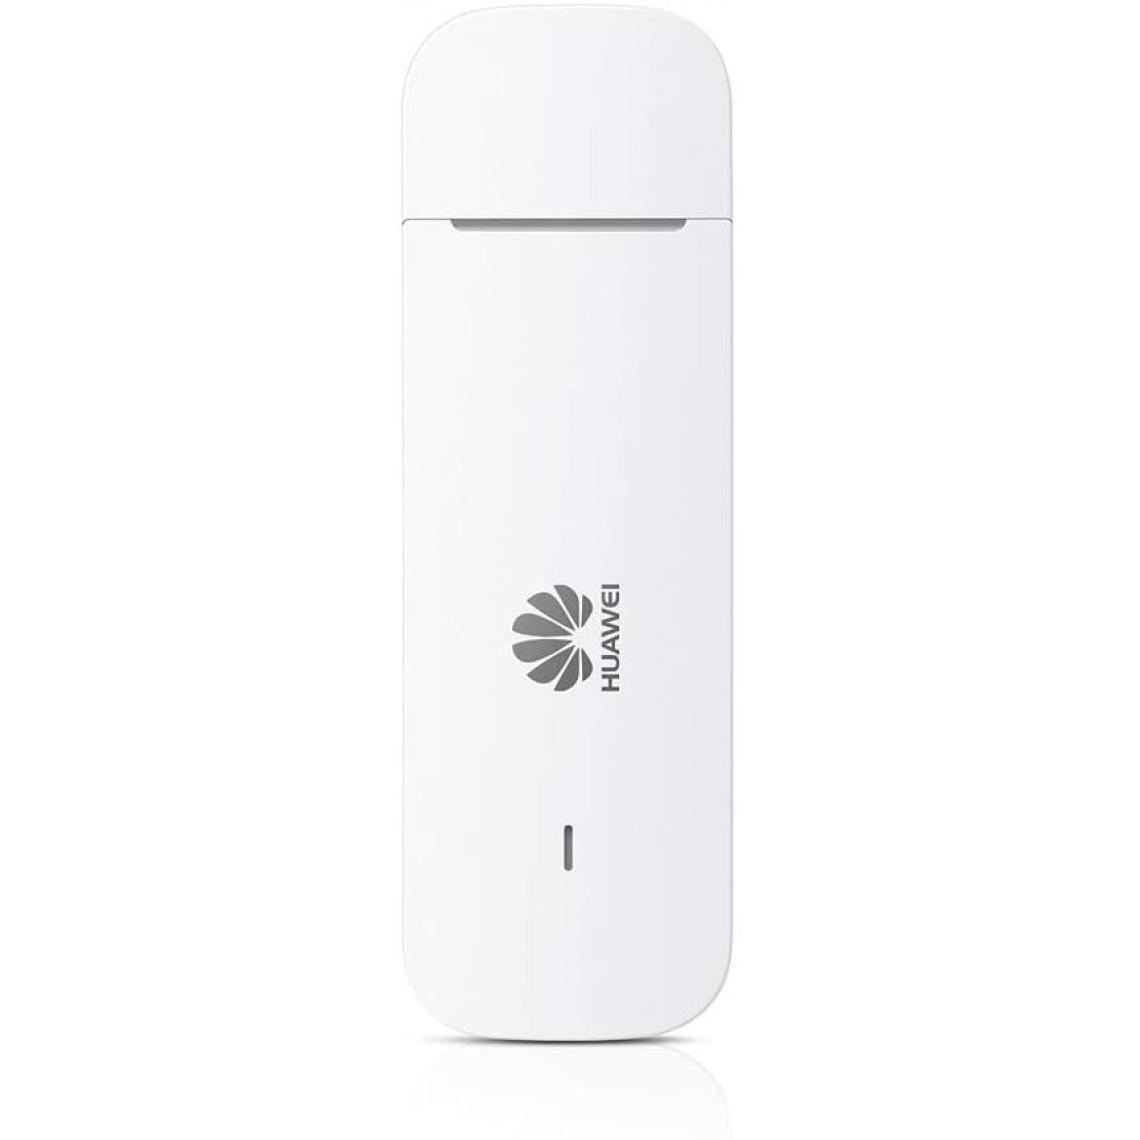 Huawei - Huawei E3372h-320 blanc Clé 4G USB - Modem / Routeur / Points d'accès